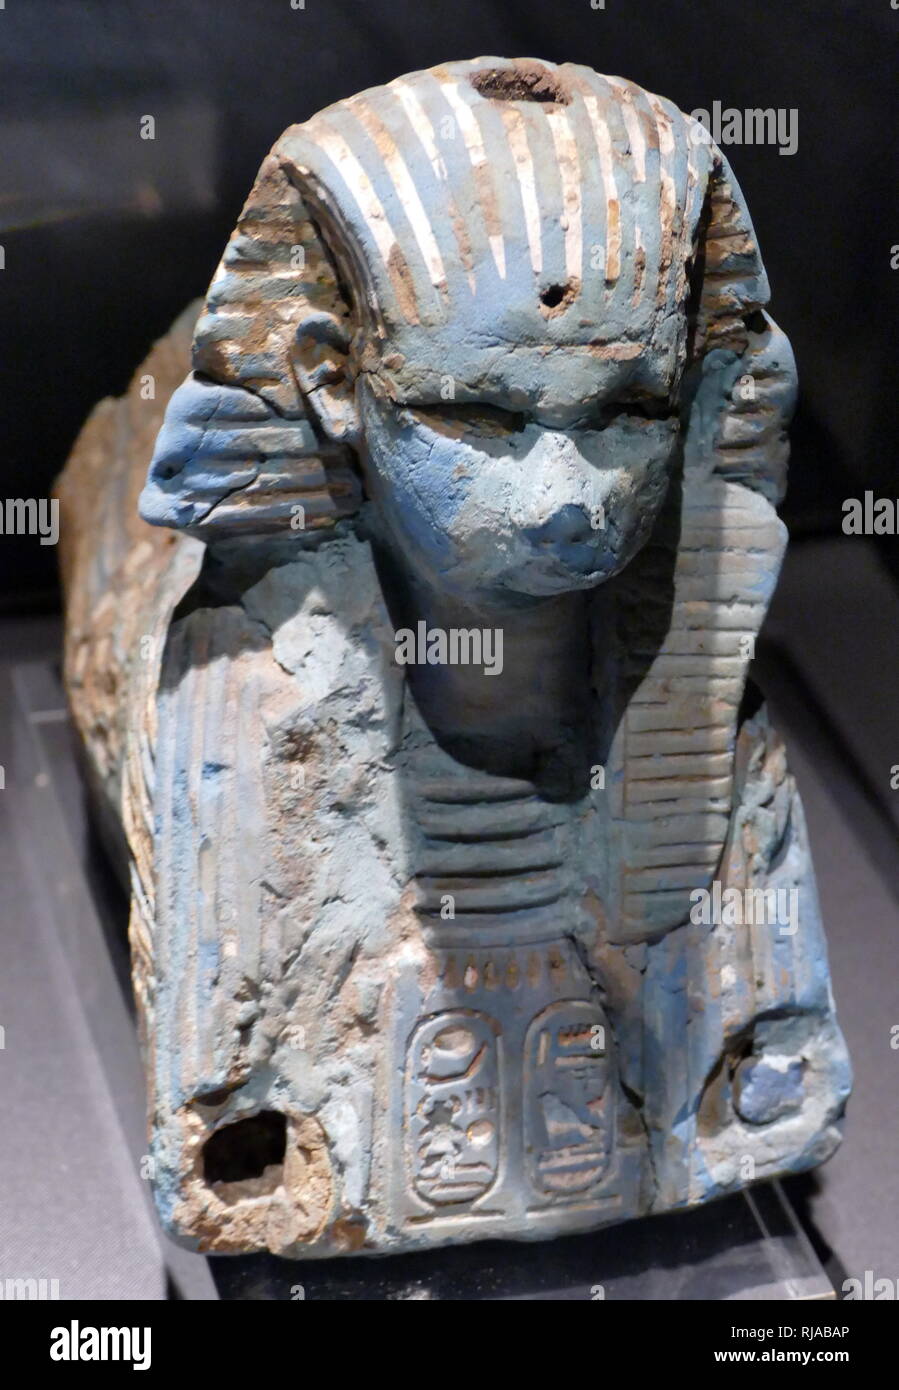 Blauer Fayence sphinx Darstellung König Haremhab. 18. Dynastie, Ägyptische. Haremhab regierte 14 Jahre lang, zwischen 1319 v. Chr. und 1292 v. Chr. Stockfoto